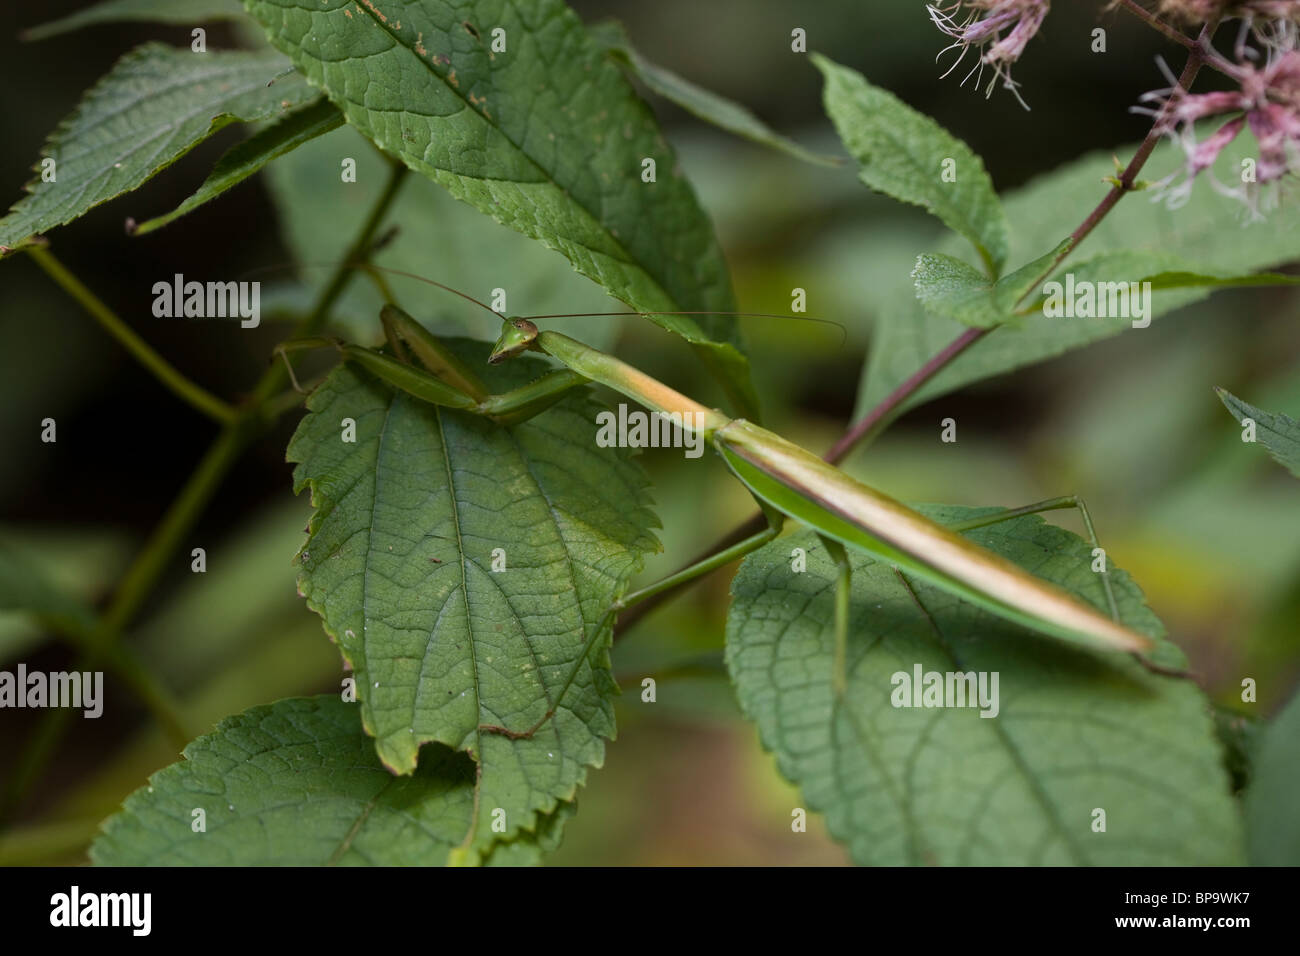 Praying mantis on leaf Stock Photo